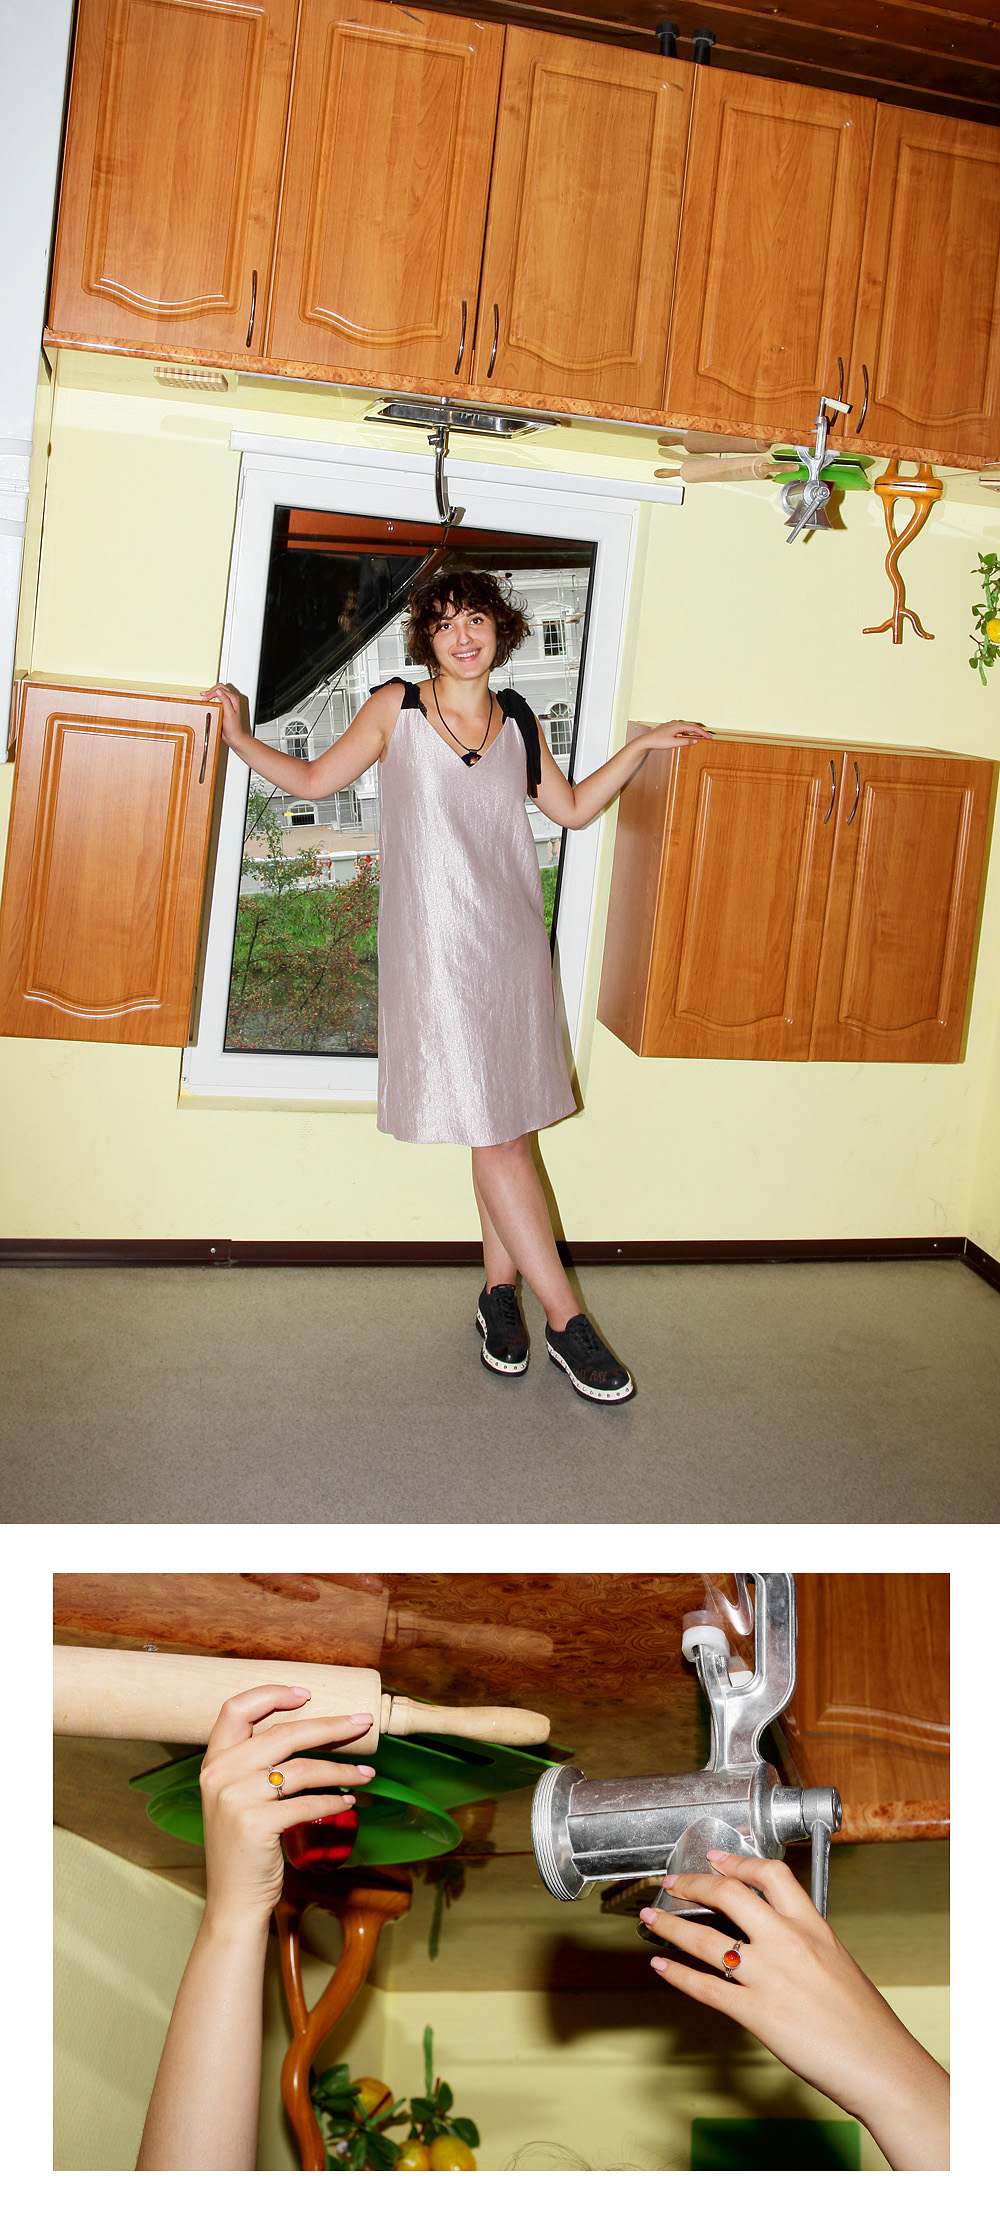 Платье Lastochki купила в Калининграде в небольшом магазинчике на Карла Макса. Местные молодые дизайнеры шьют офигенные вещи и там же продают. Влюбилась в платье с первого взгляда.
Ботинки всё те же – A.S. 98. 